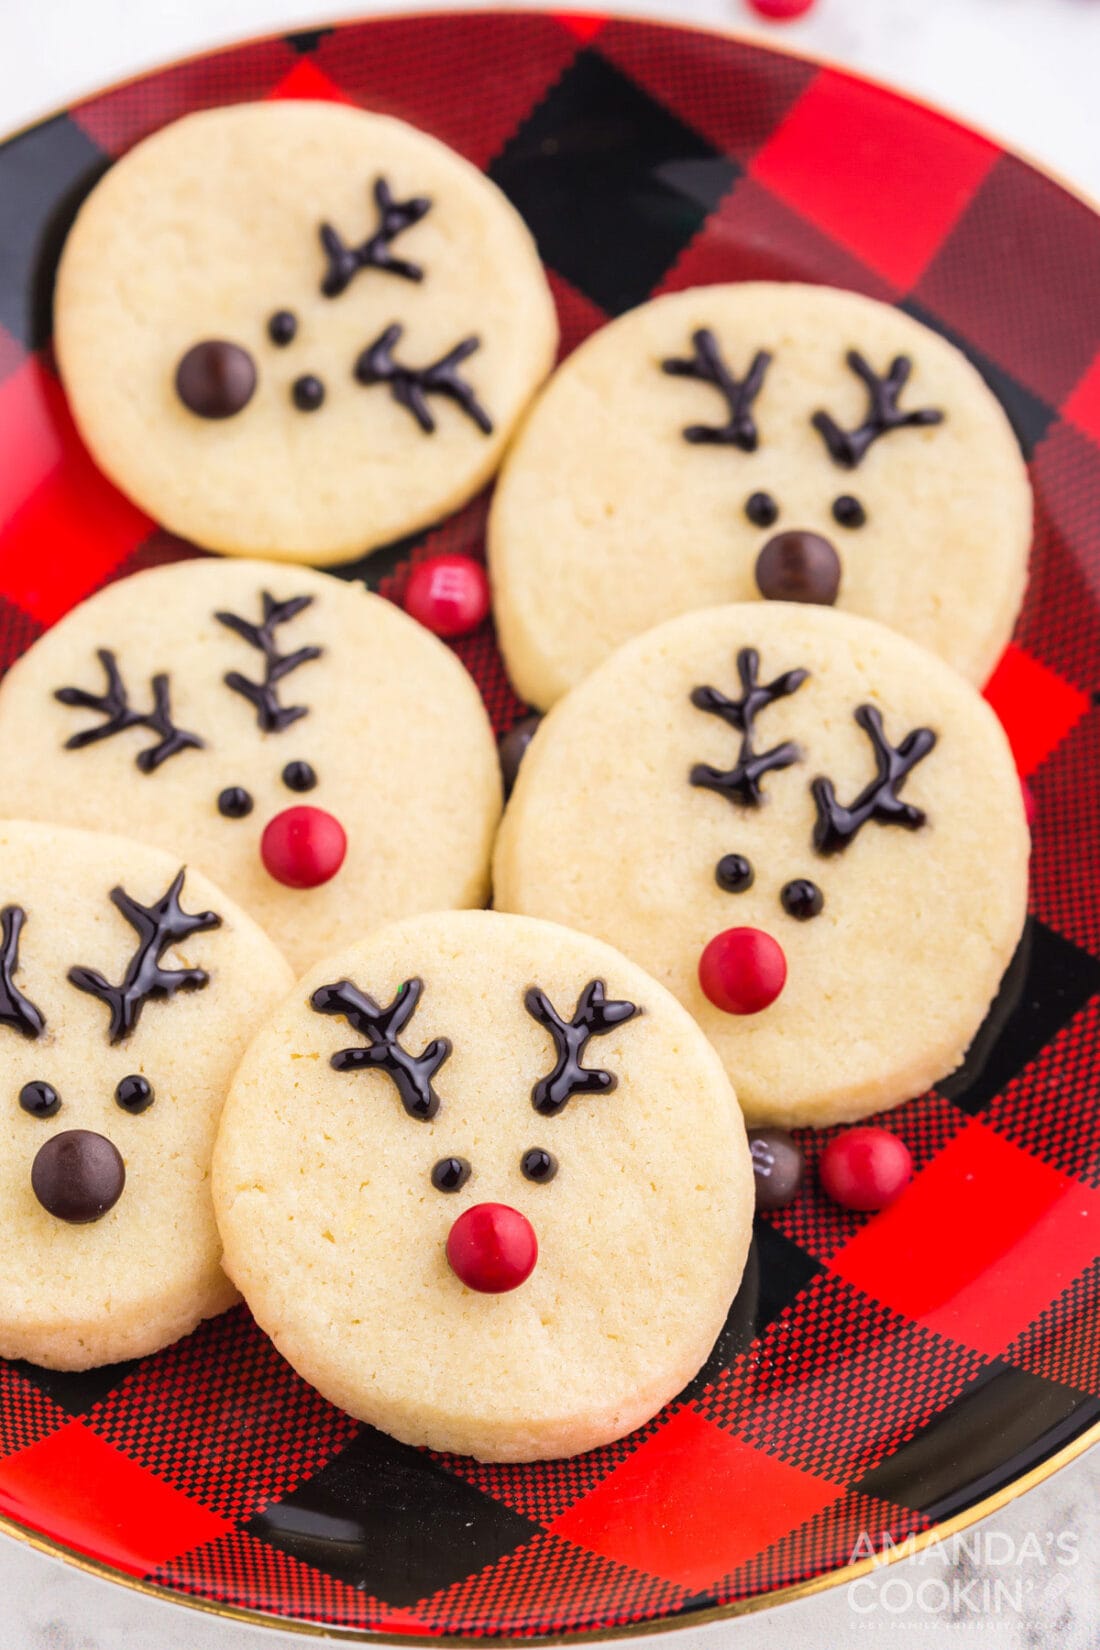 reindeer cookies on a red/black plate